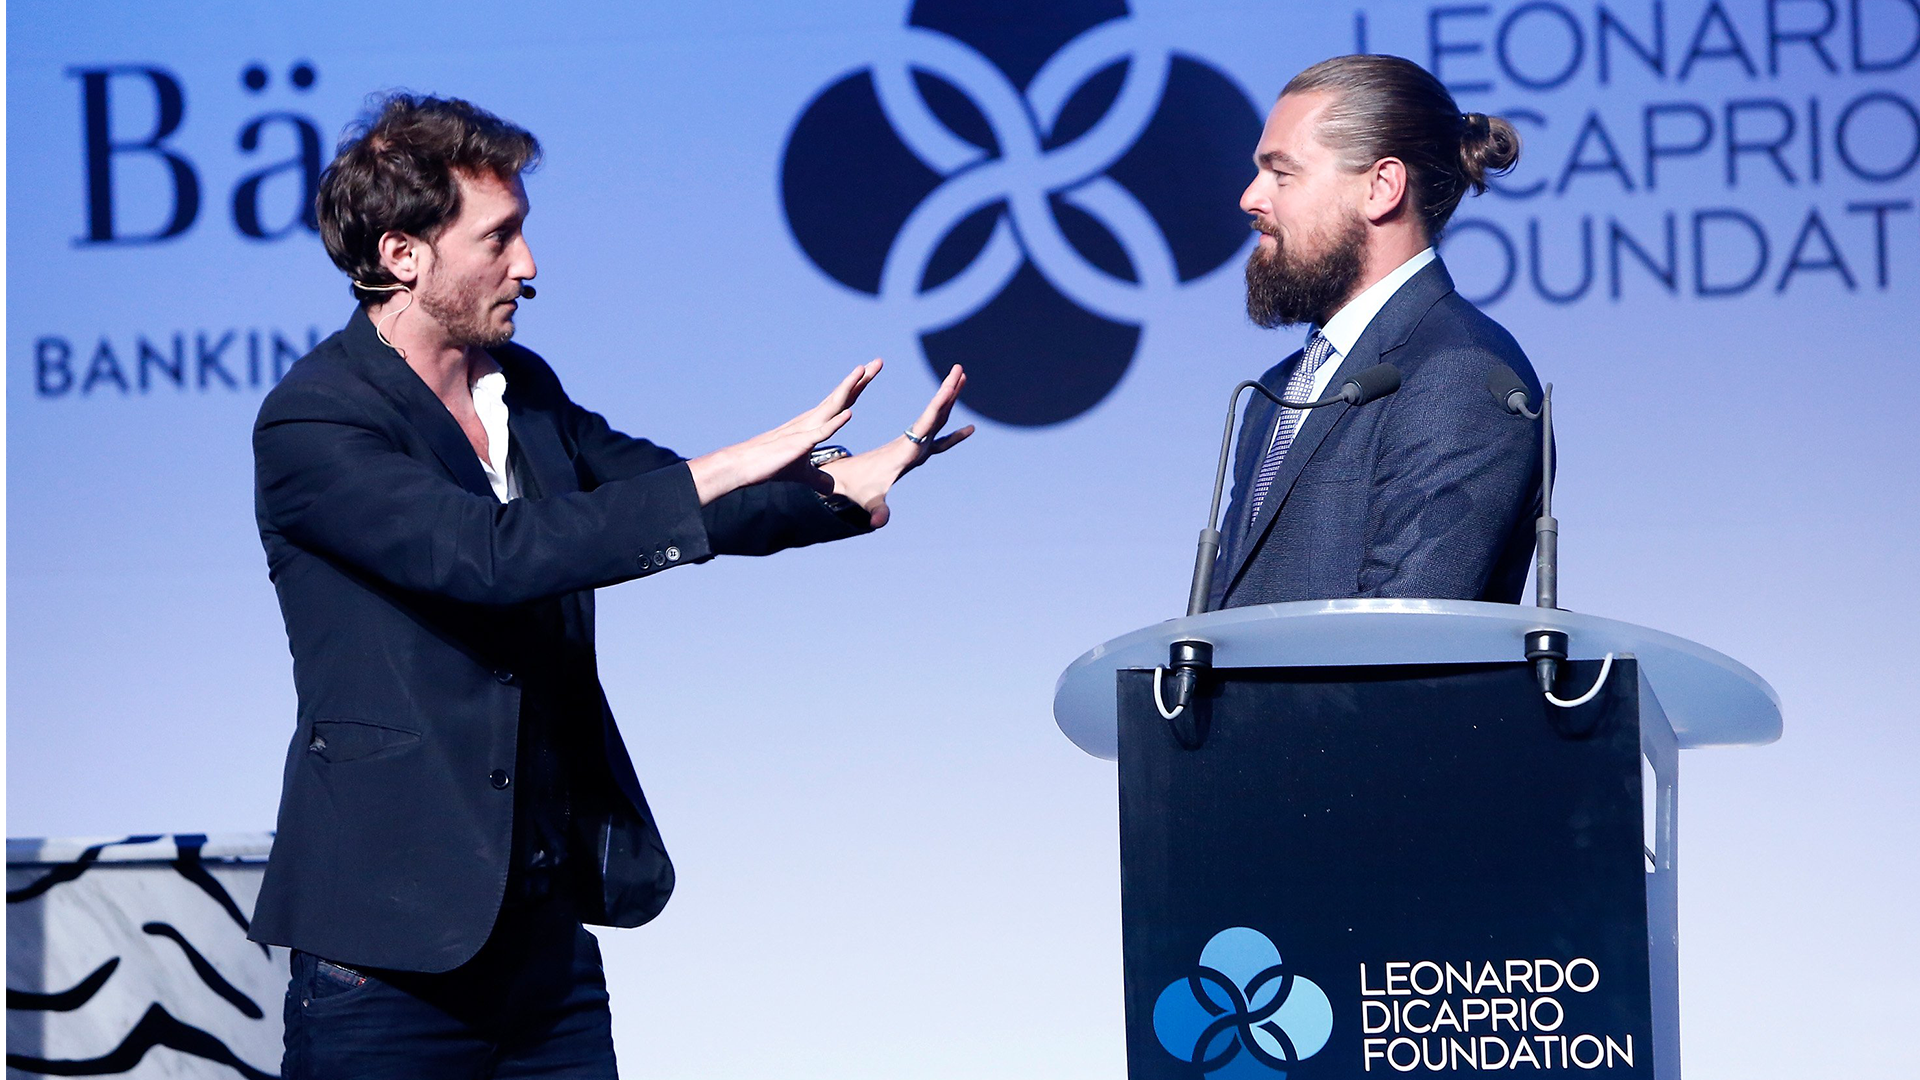 Leonardo DiCaprio Foundation Gala